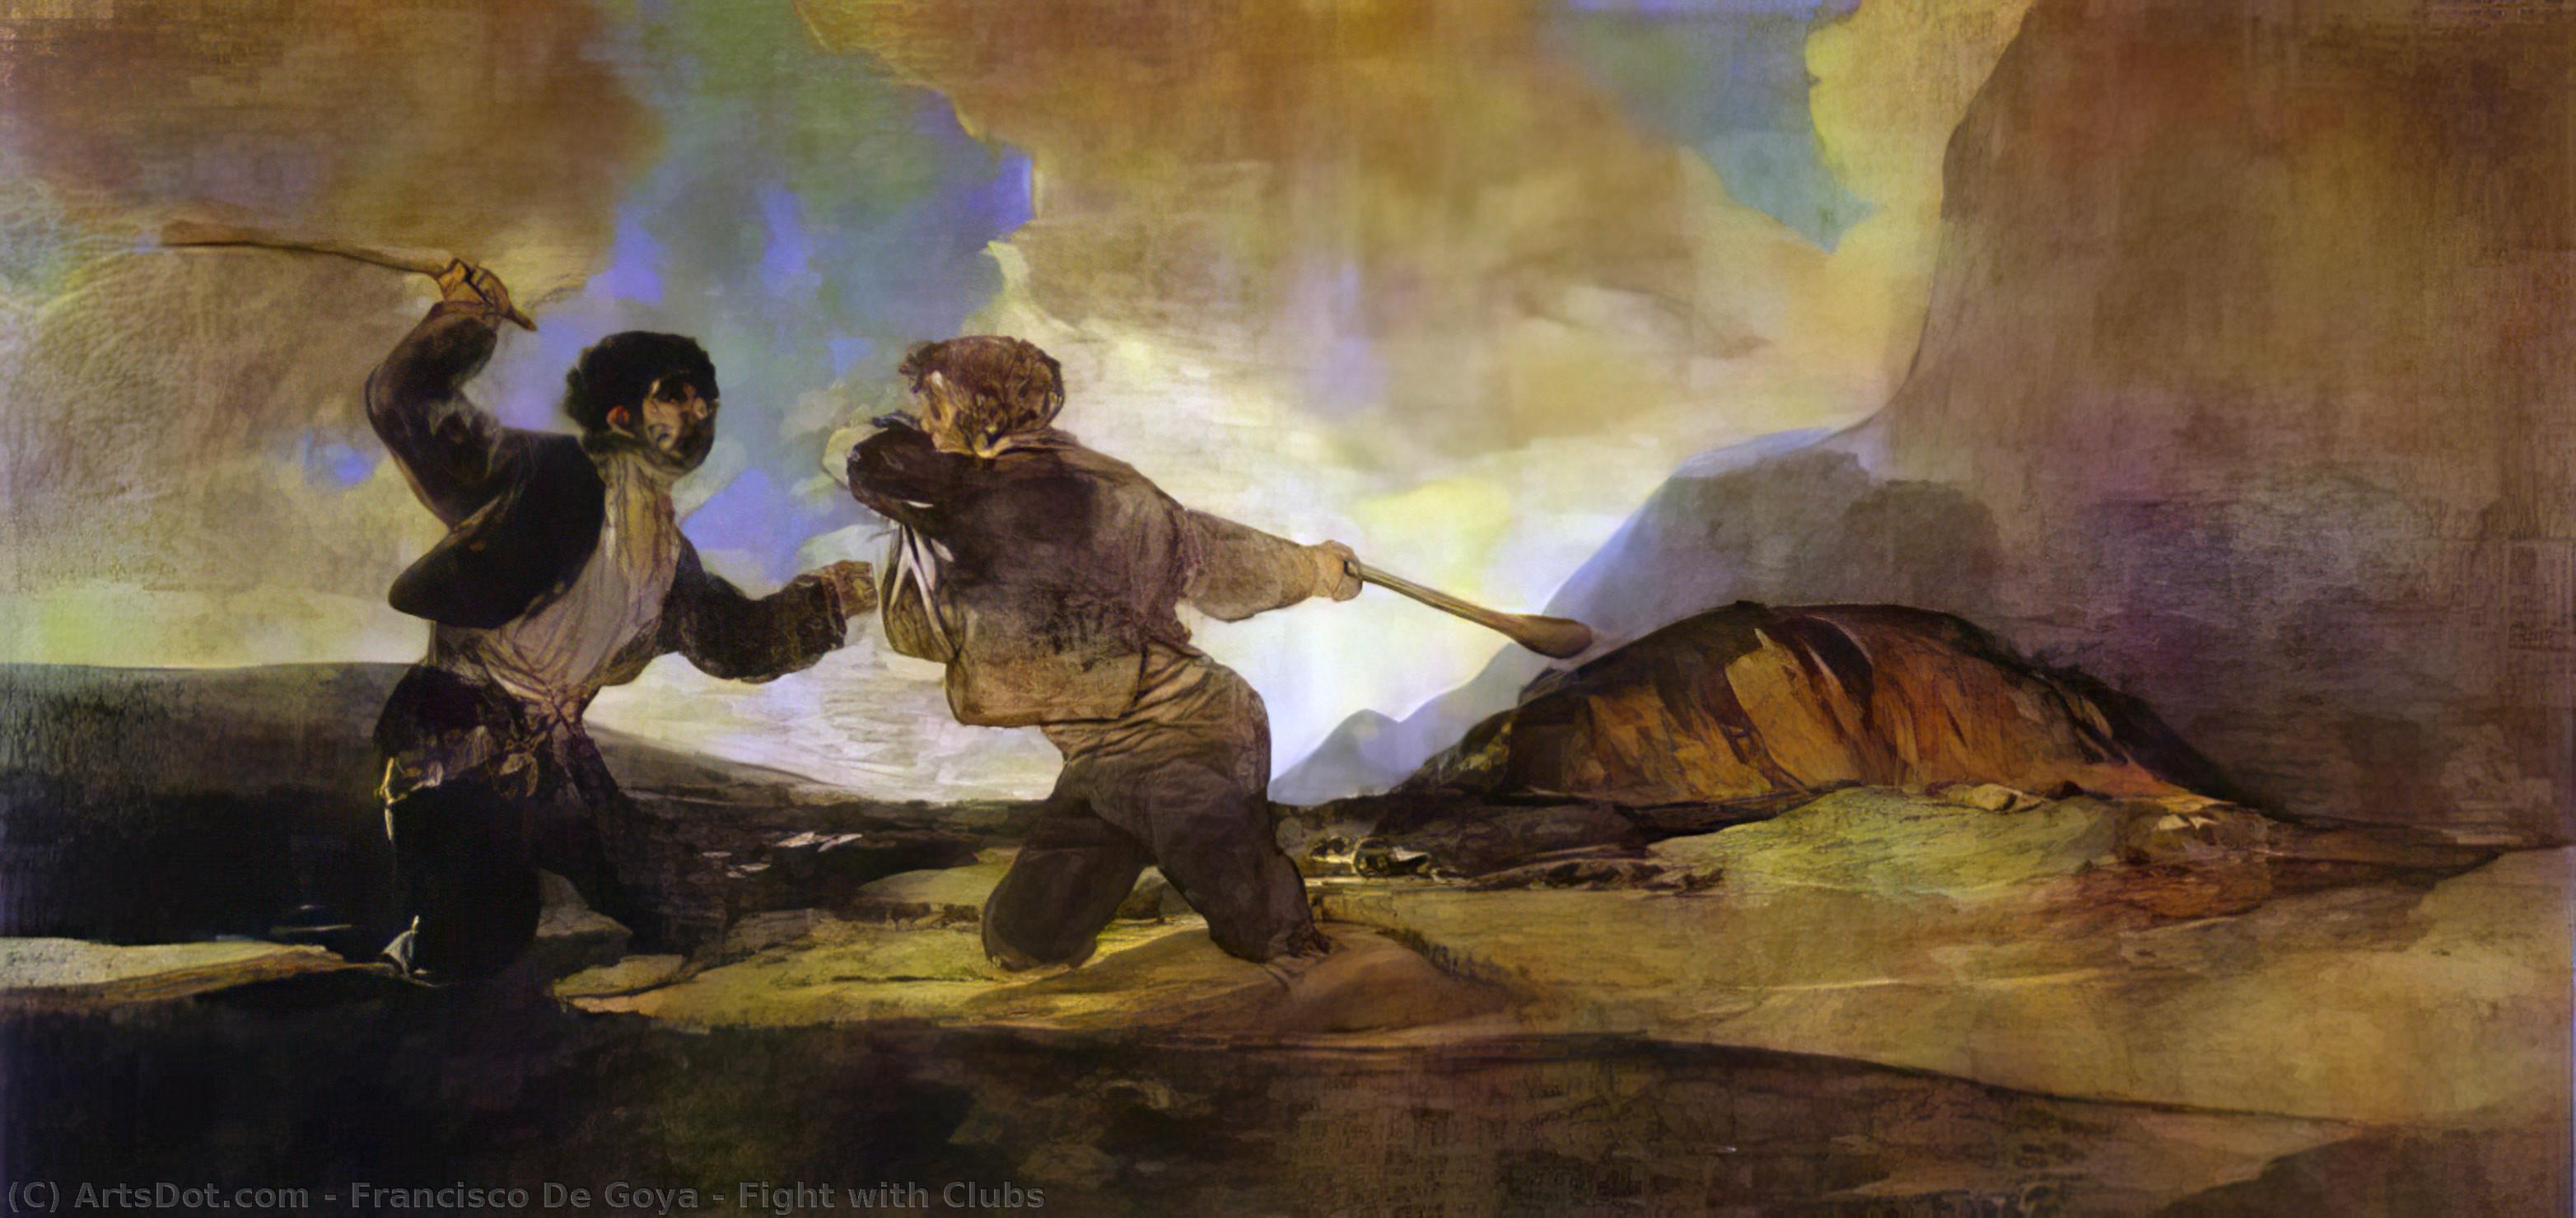 WikiOO.org - Енциклопедія образотворчого мистецтва - Живопис, Картини
 Francisco De Goya - Fight with Clubs